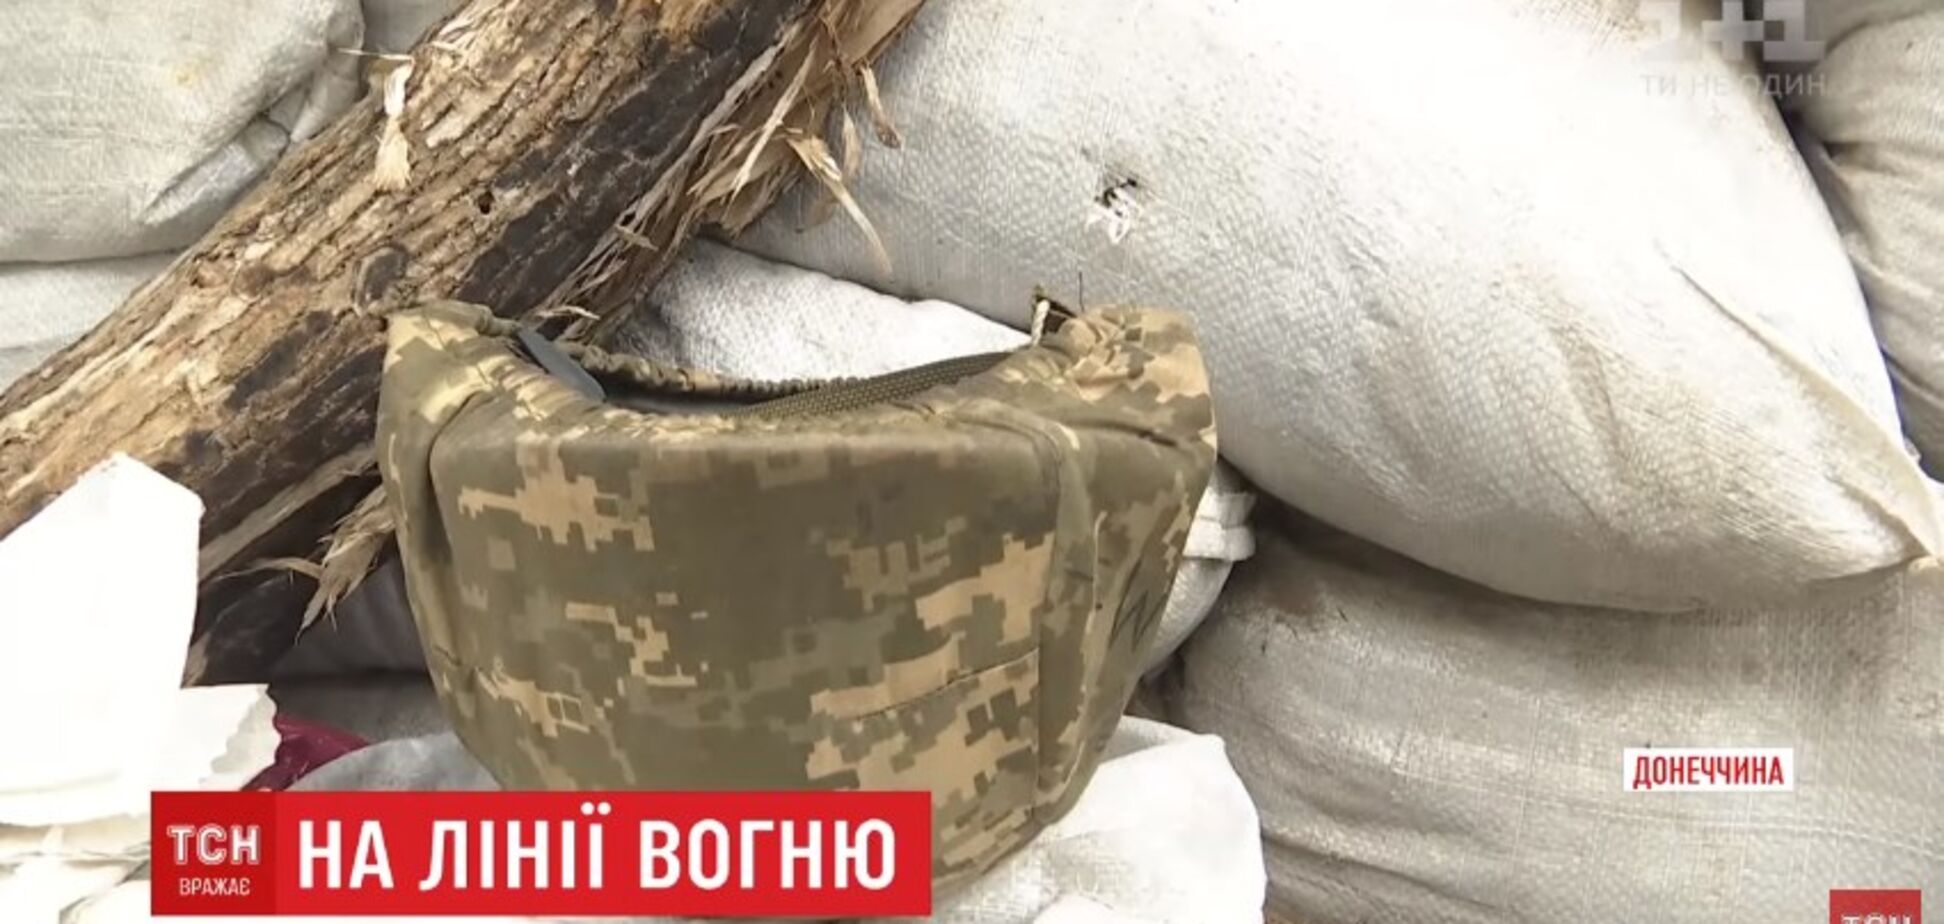 'Особый почерк': снайперы террористов начали охоту на украинских офицеров на Донбассе